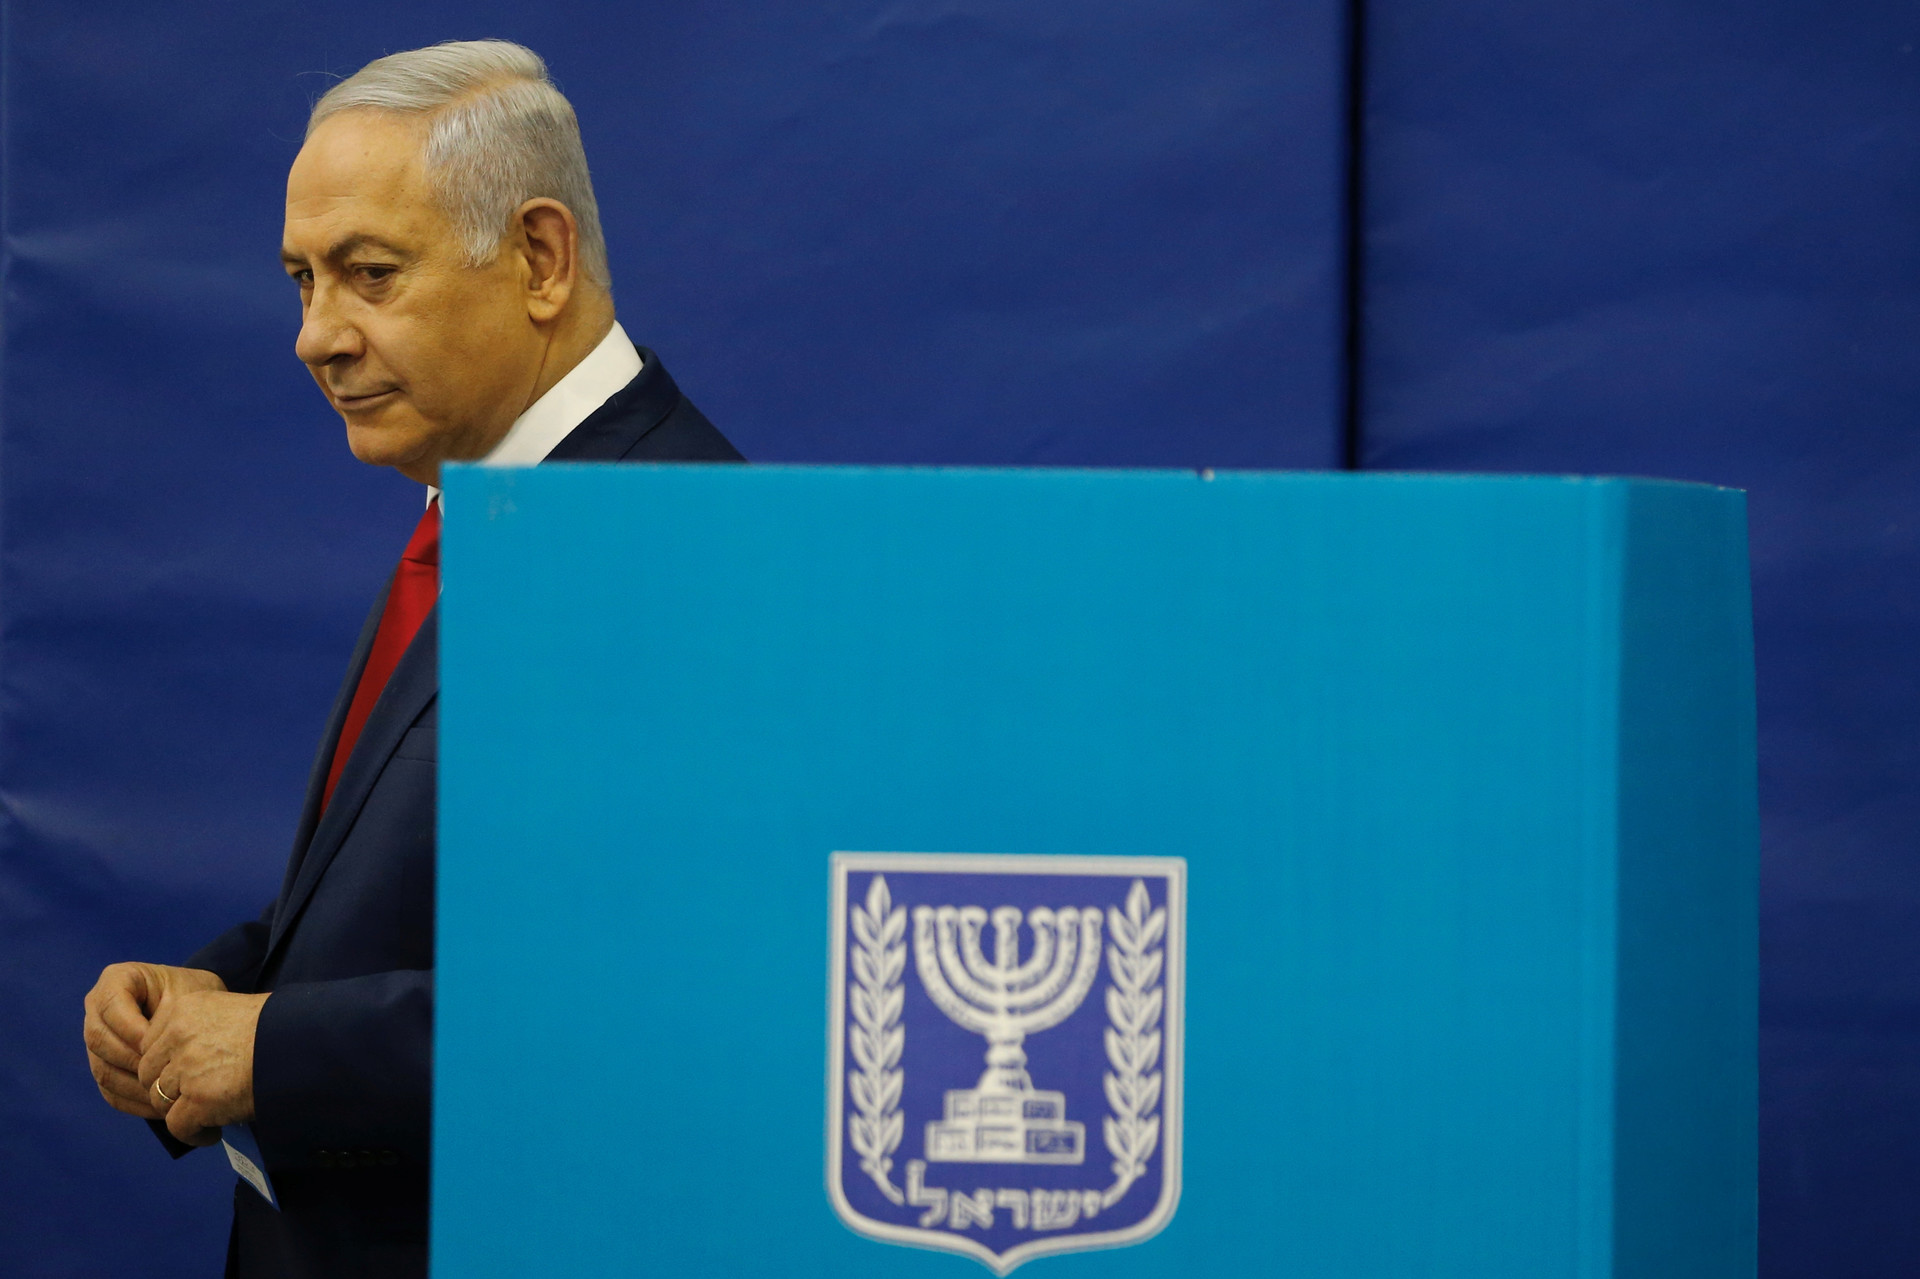 Условный посредник: зачем премьер Израиля едет на Украину после 20-летнего перерыва